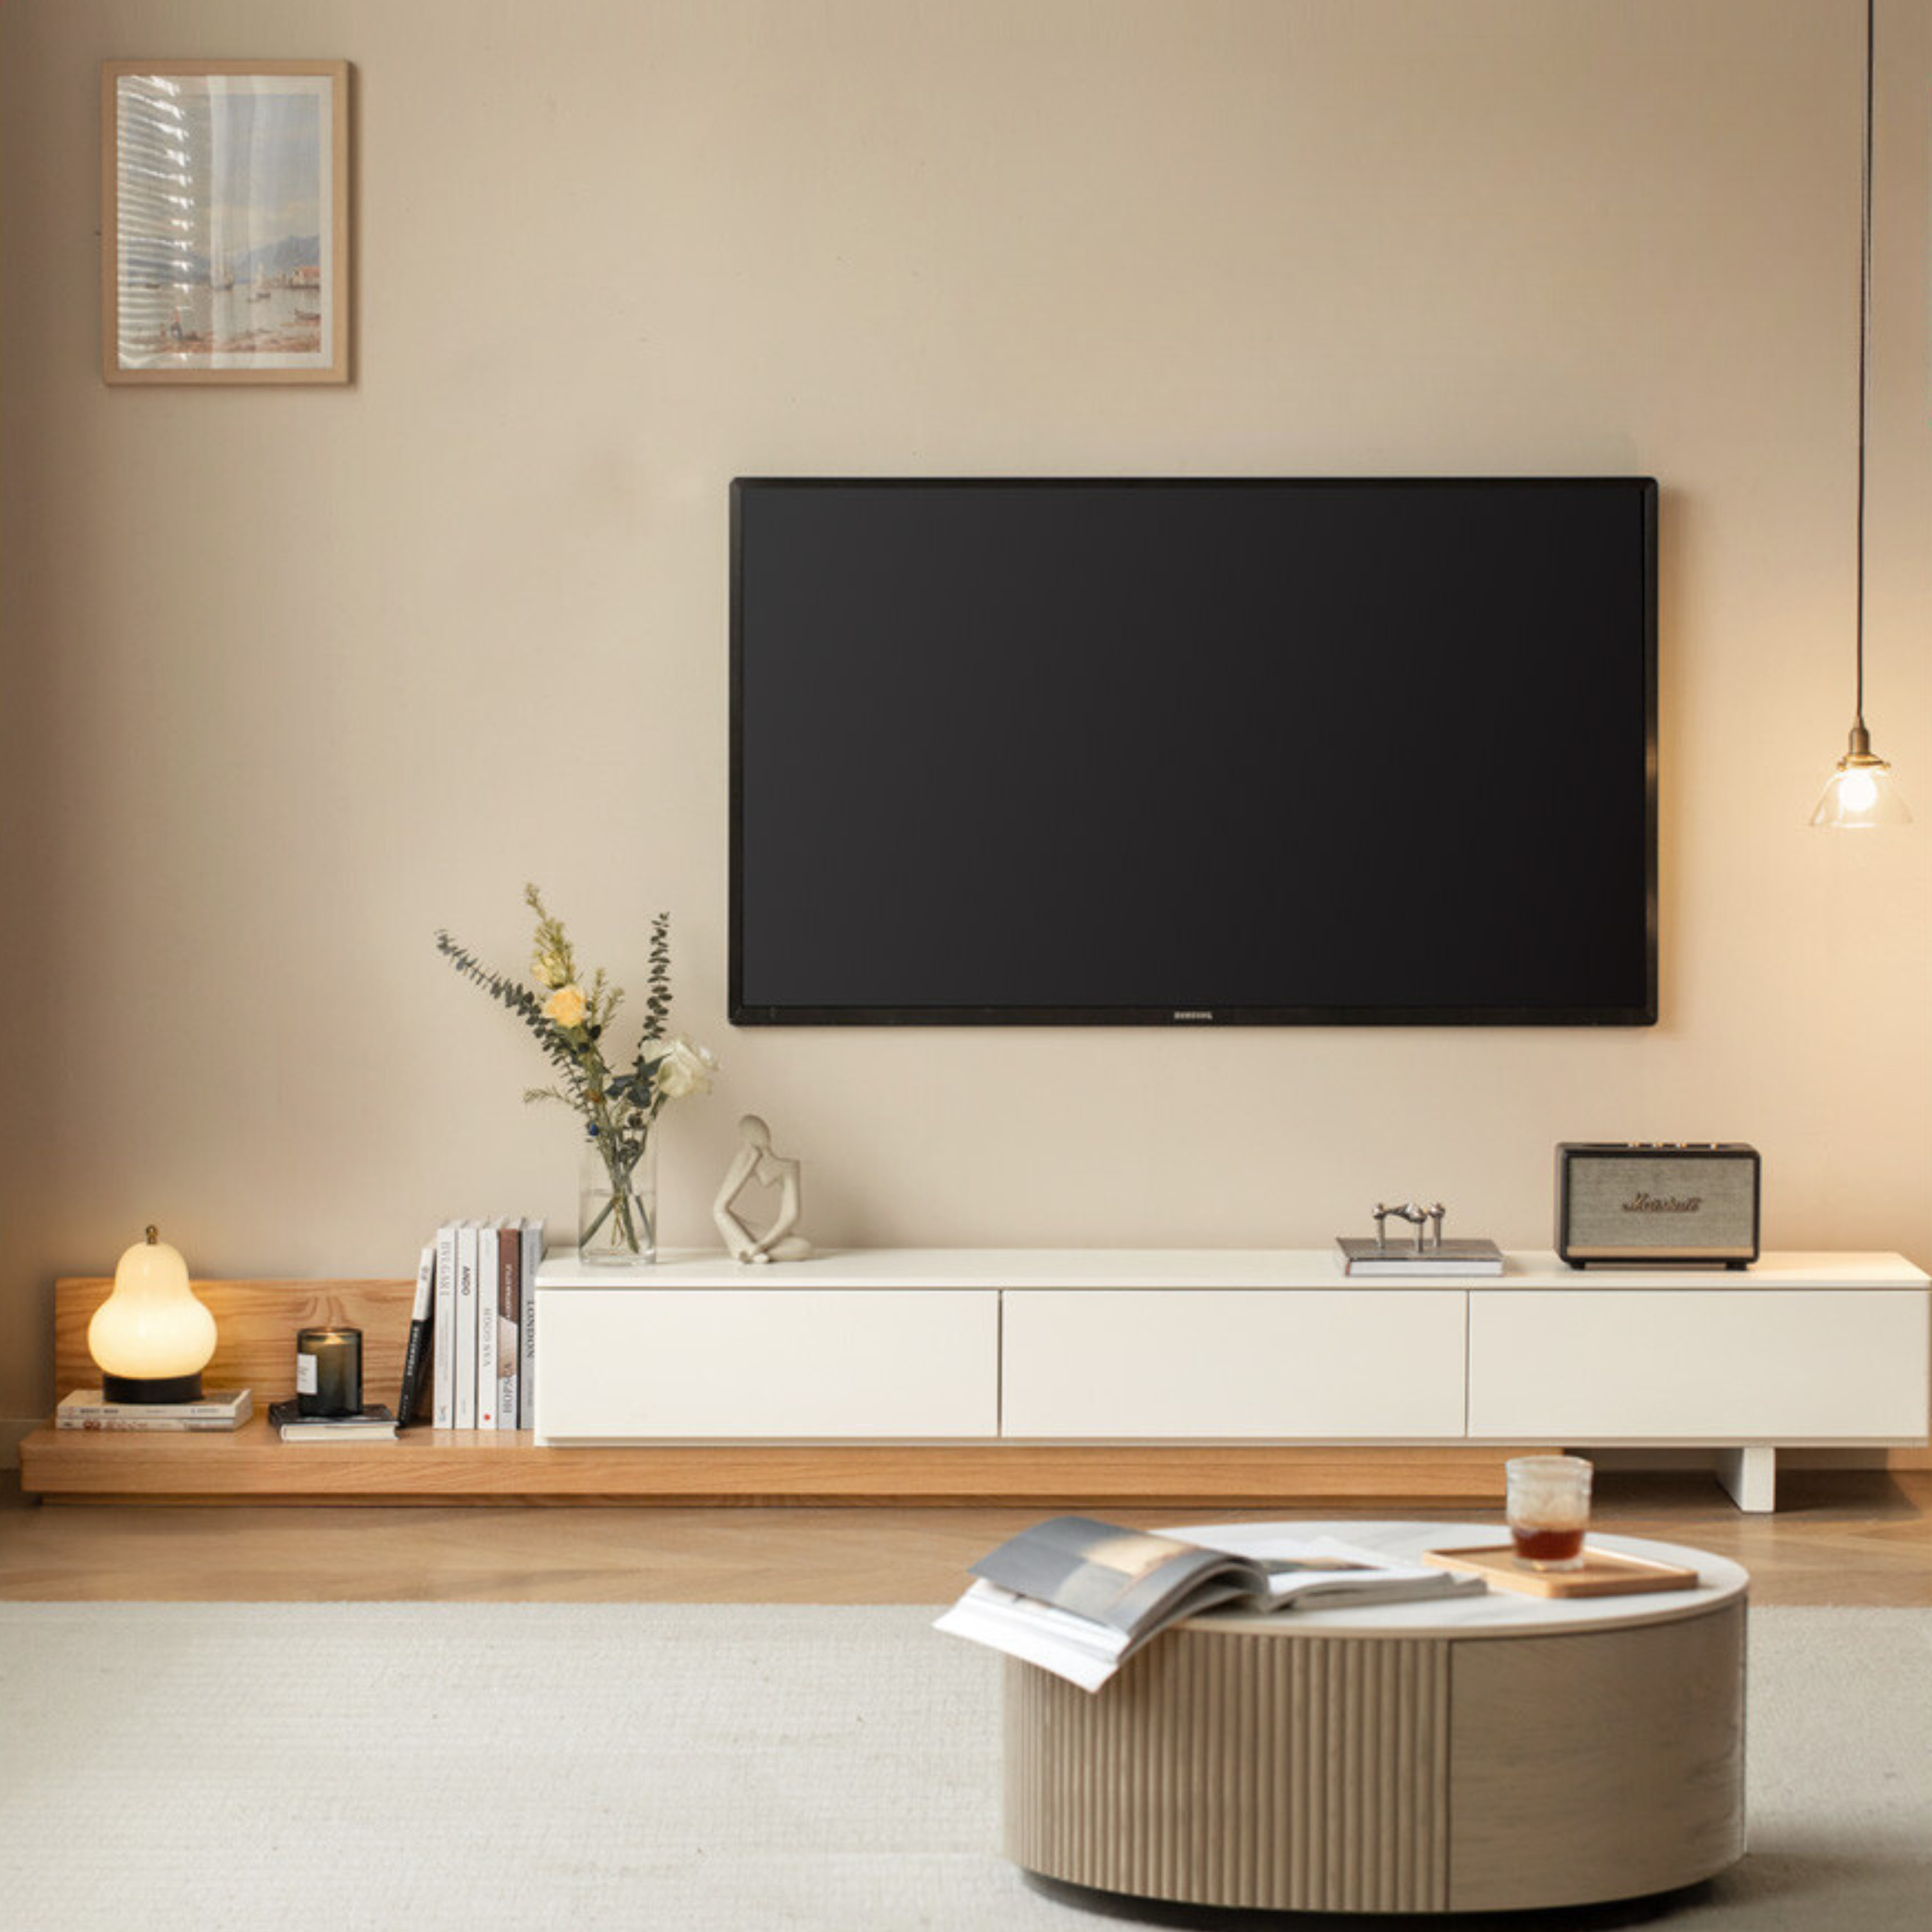 Oak- poplar solid wood retractable floor TV cabinet